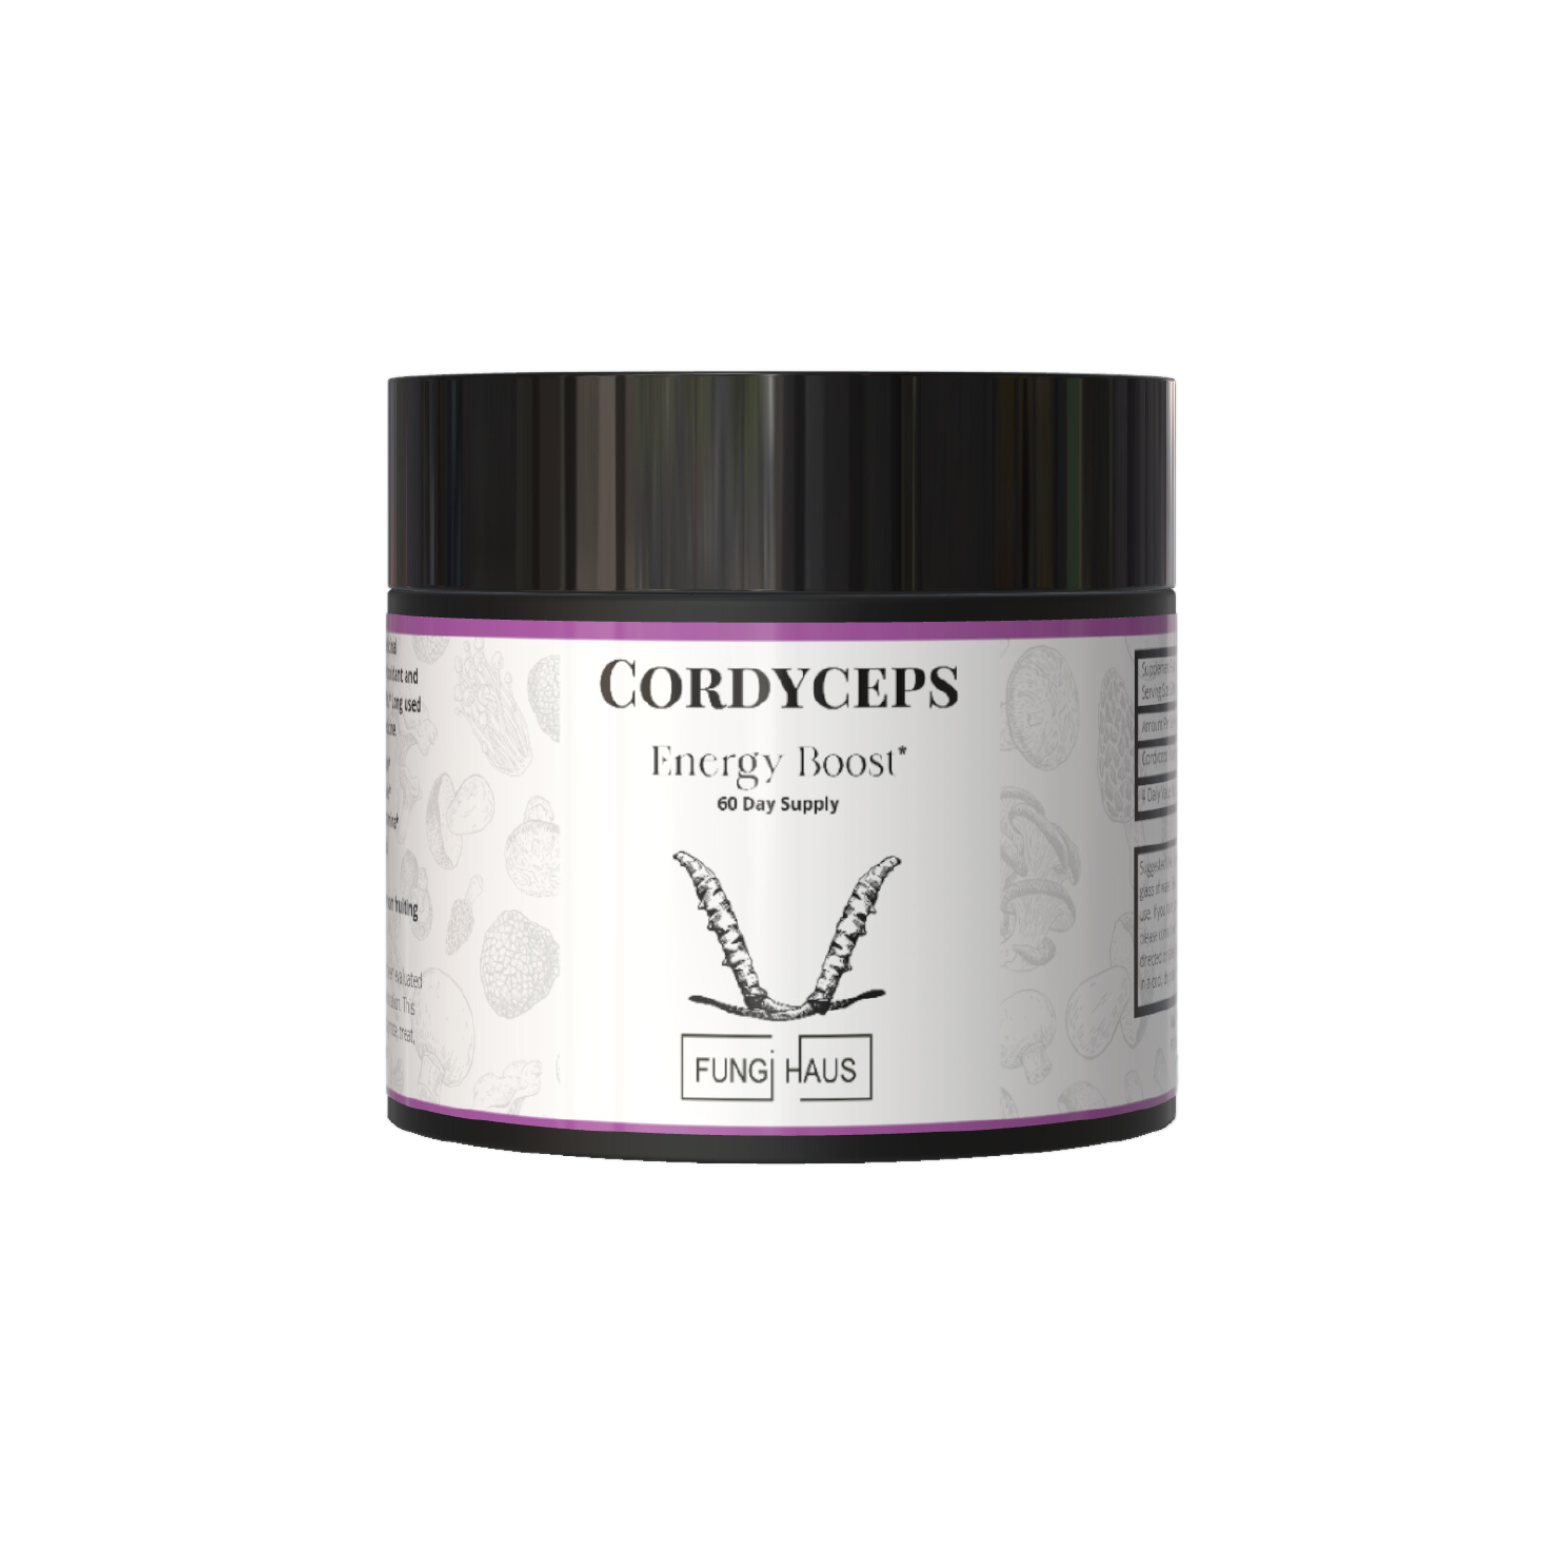 Cordyceps Energy Boost* - 60 Day Supply - Powder